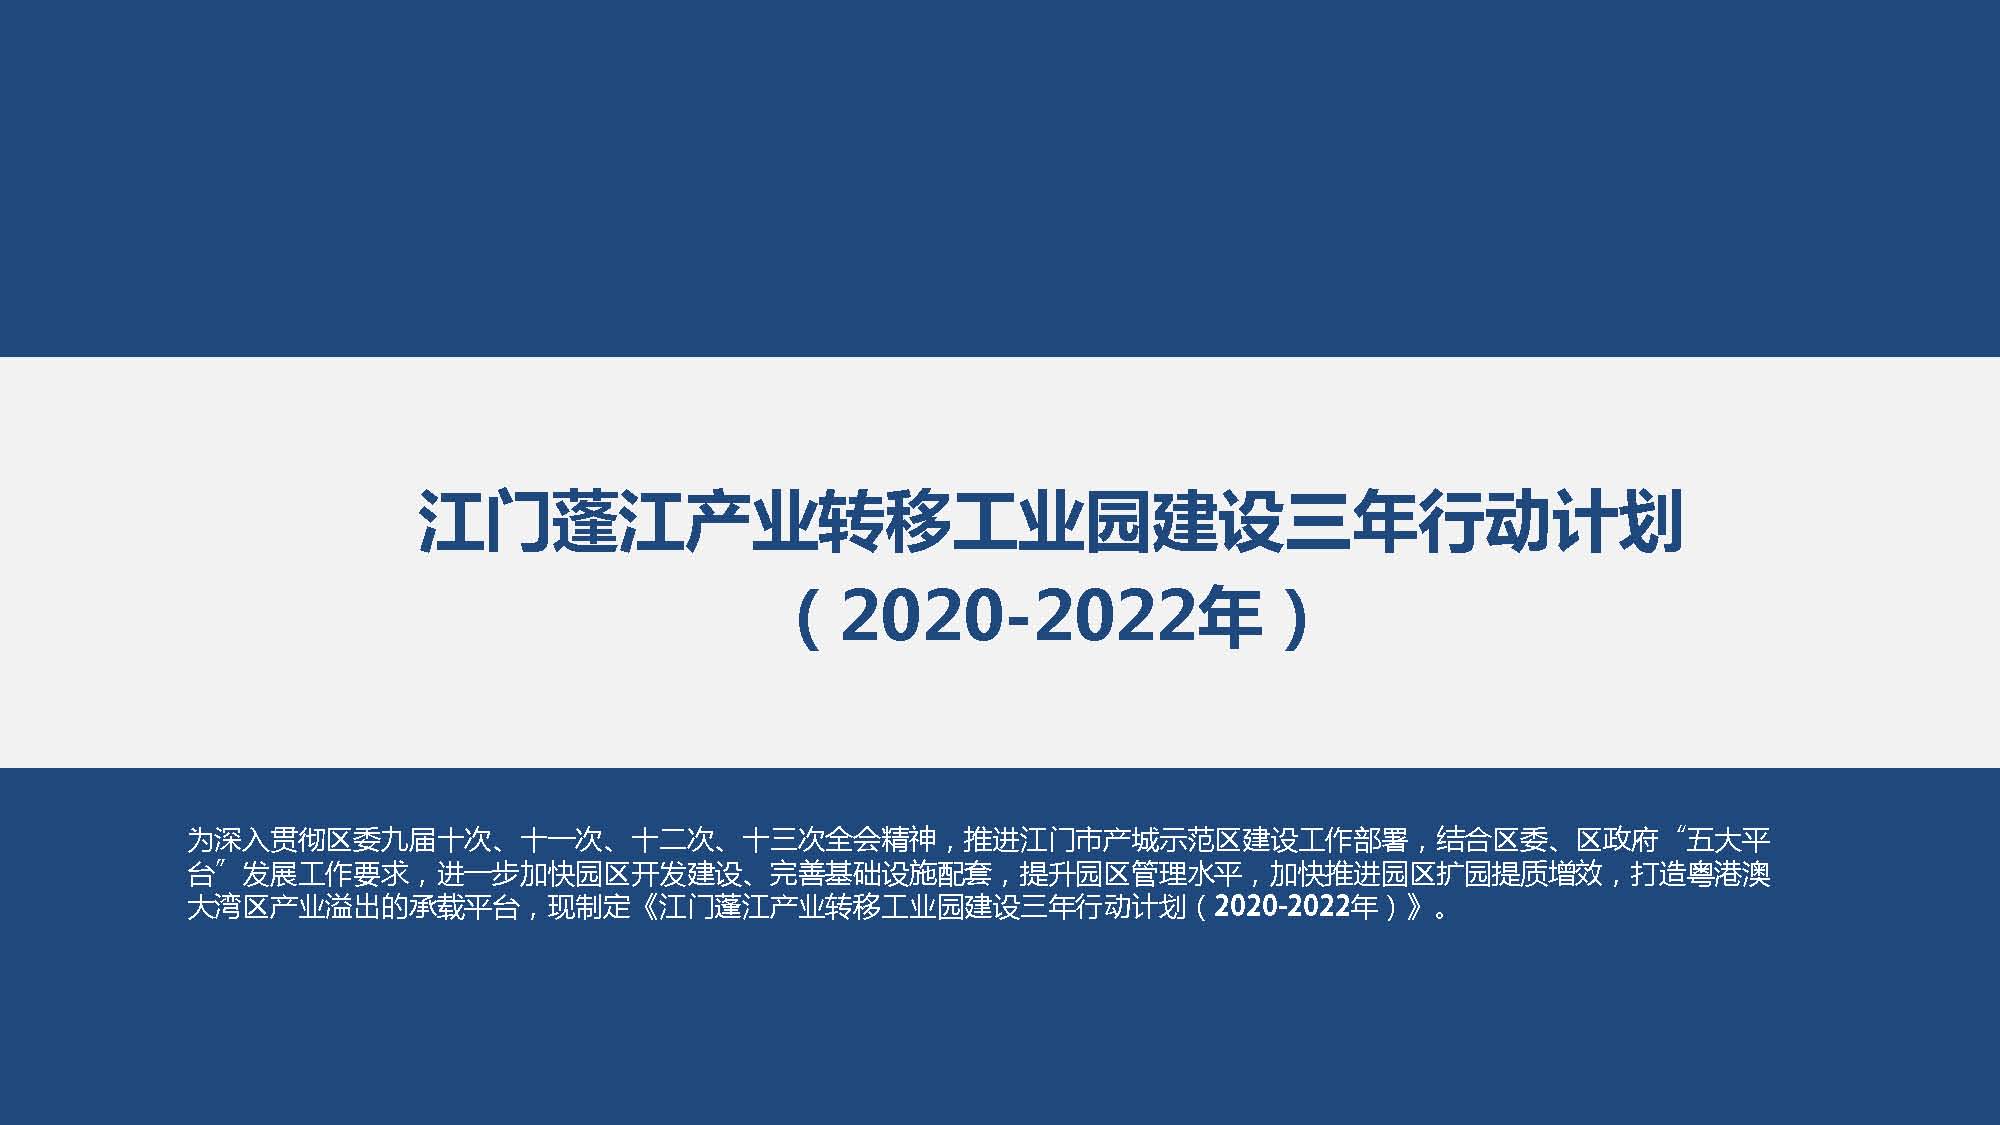 《江门蓬江产业转移工业园建设三年行动计划（2020-2022年）》图文解读_页面_01.jpg